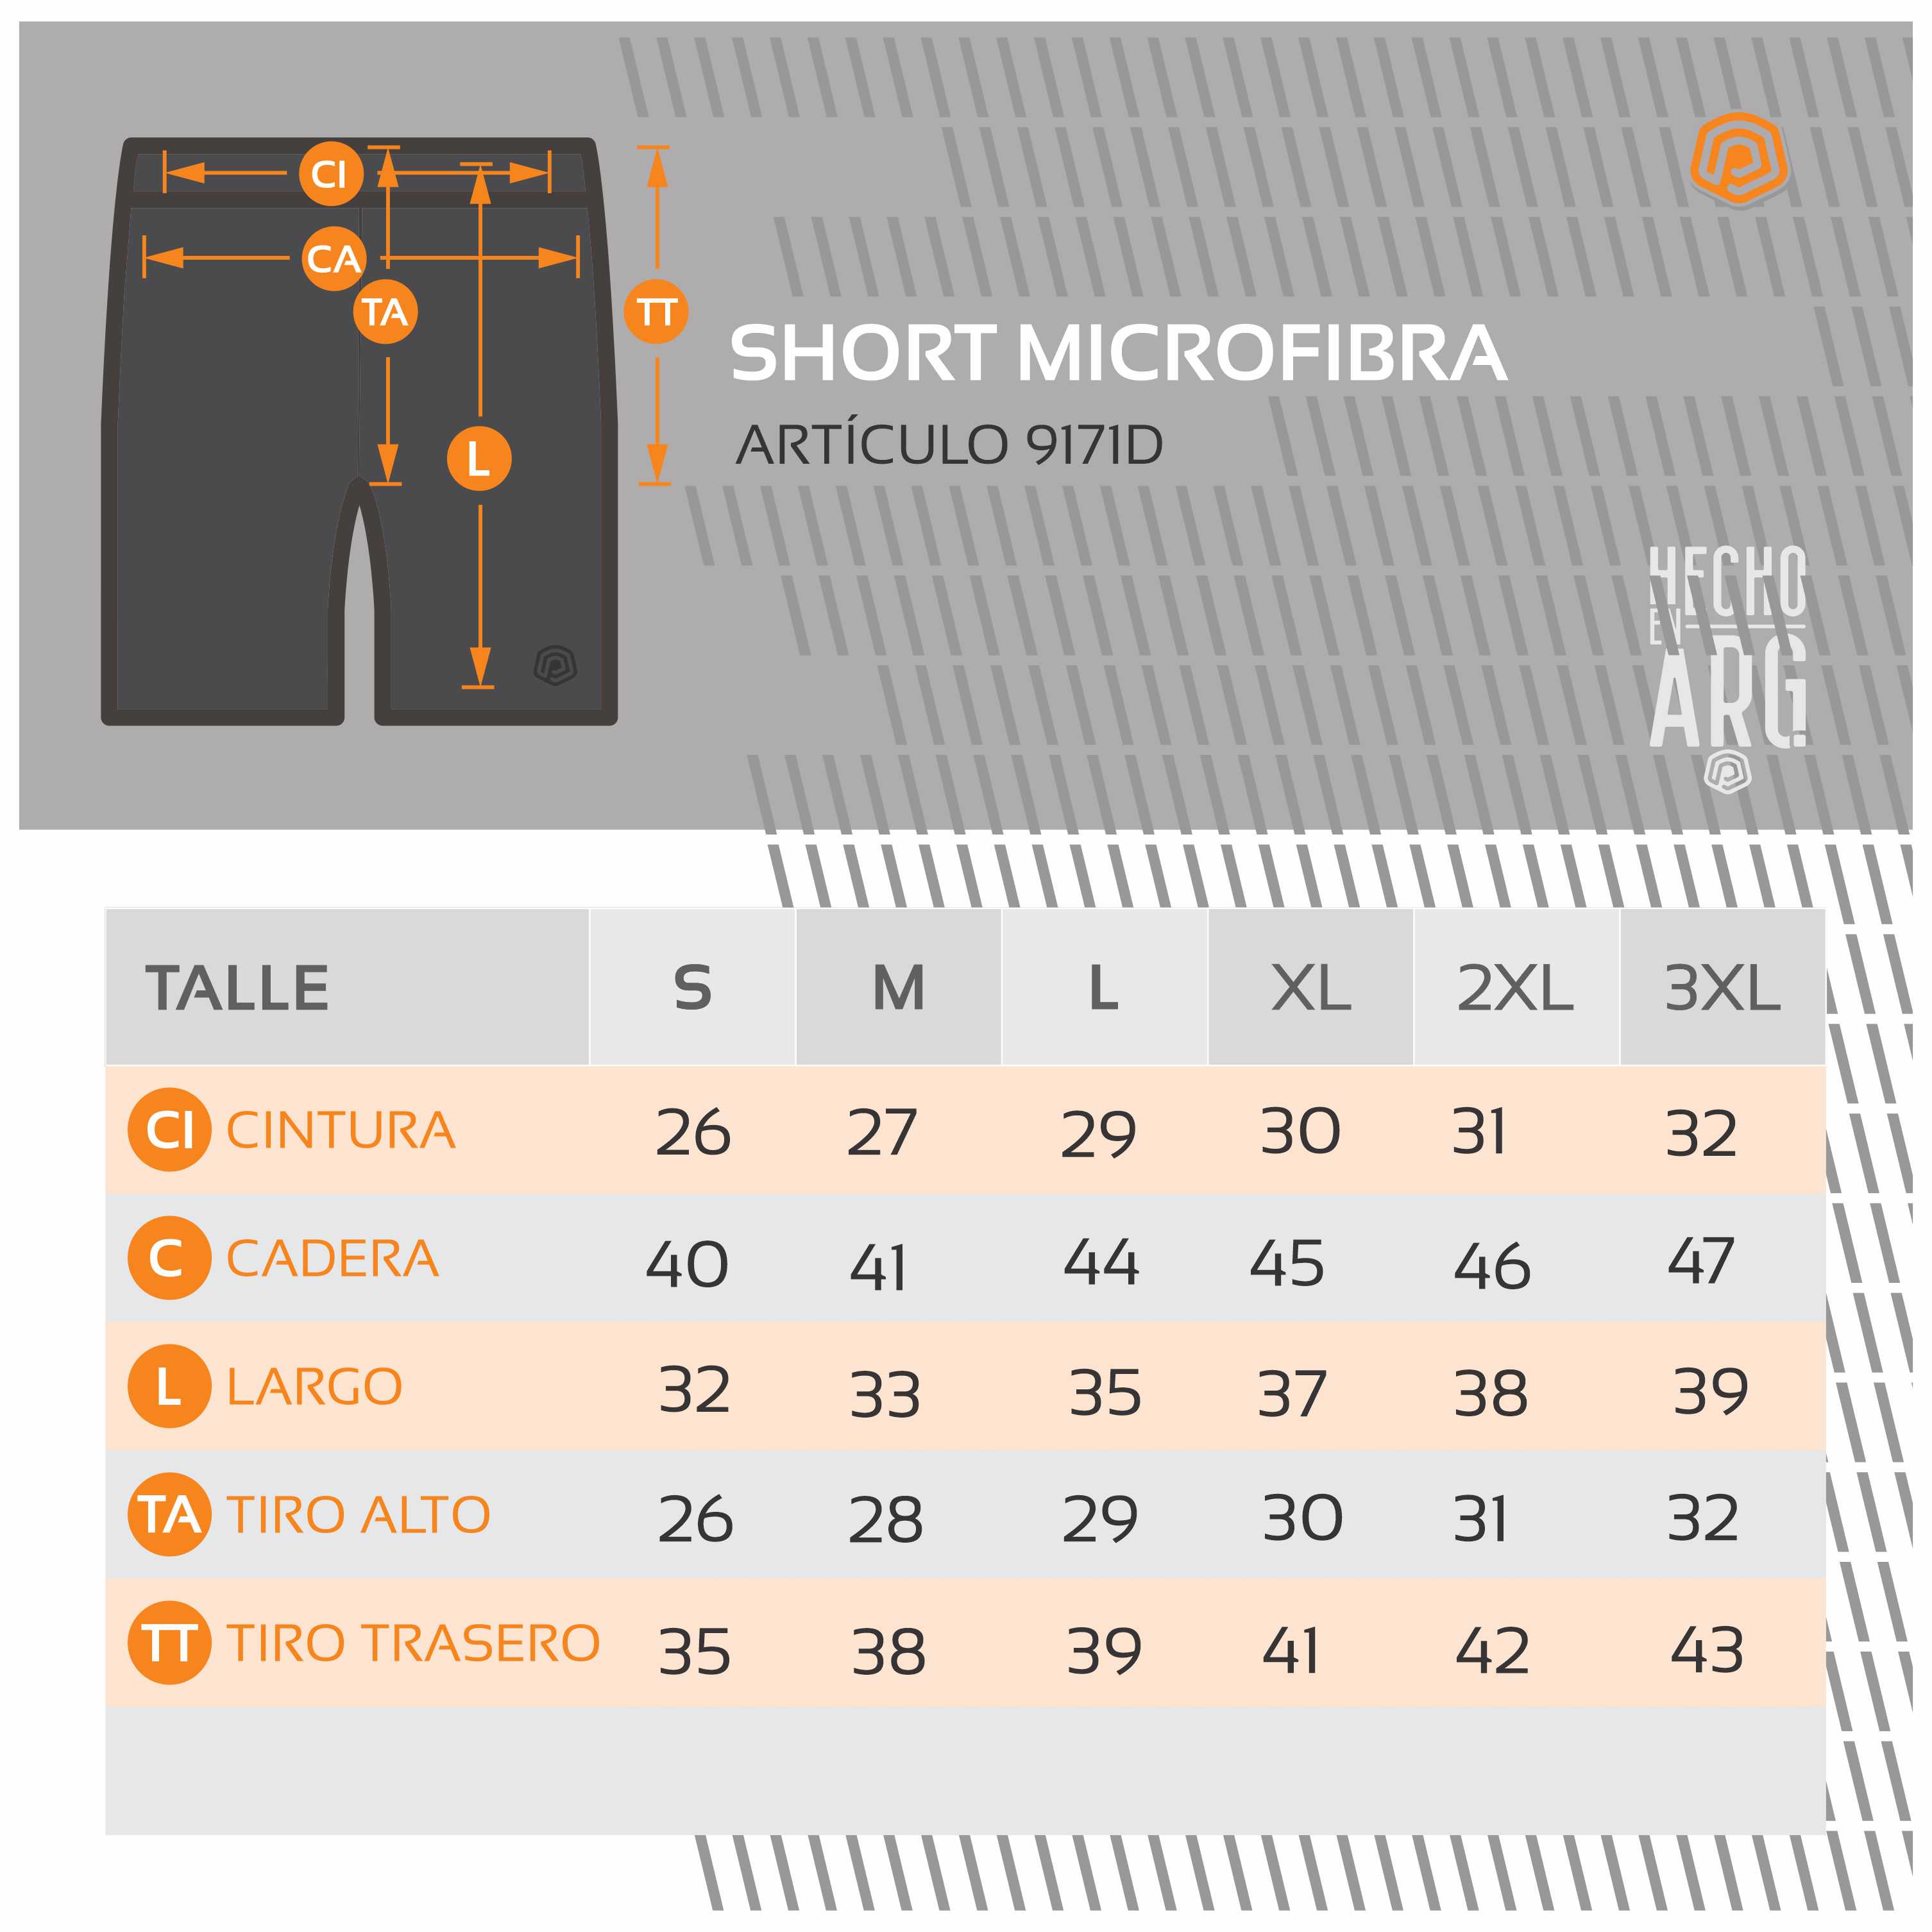 TABLA DE TALLES SHORT MICROFIBRA